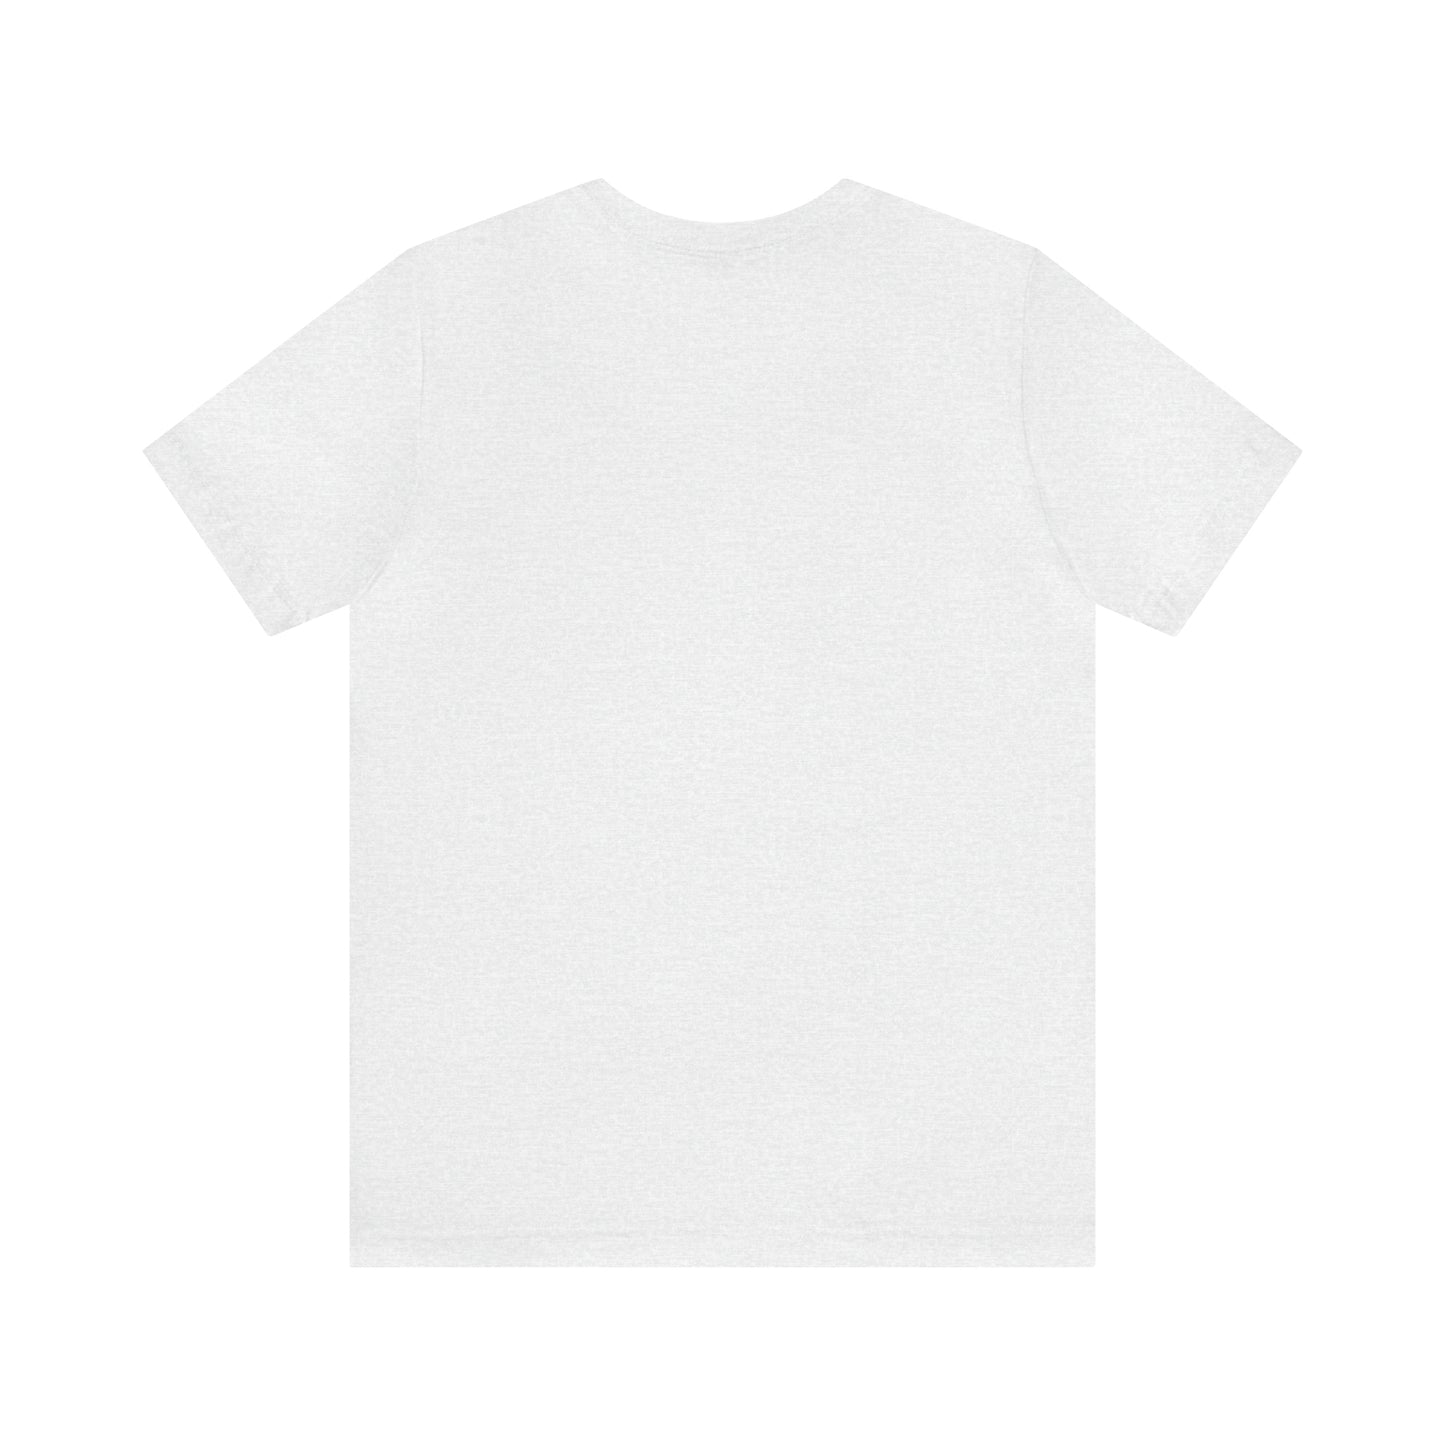 Cape Cod, Mass Pickleball Short Sleeve T-Shirt